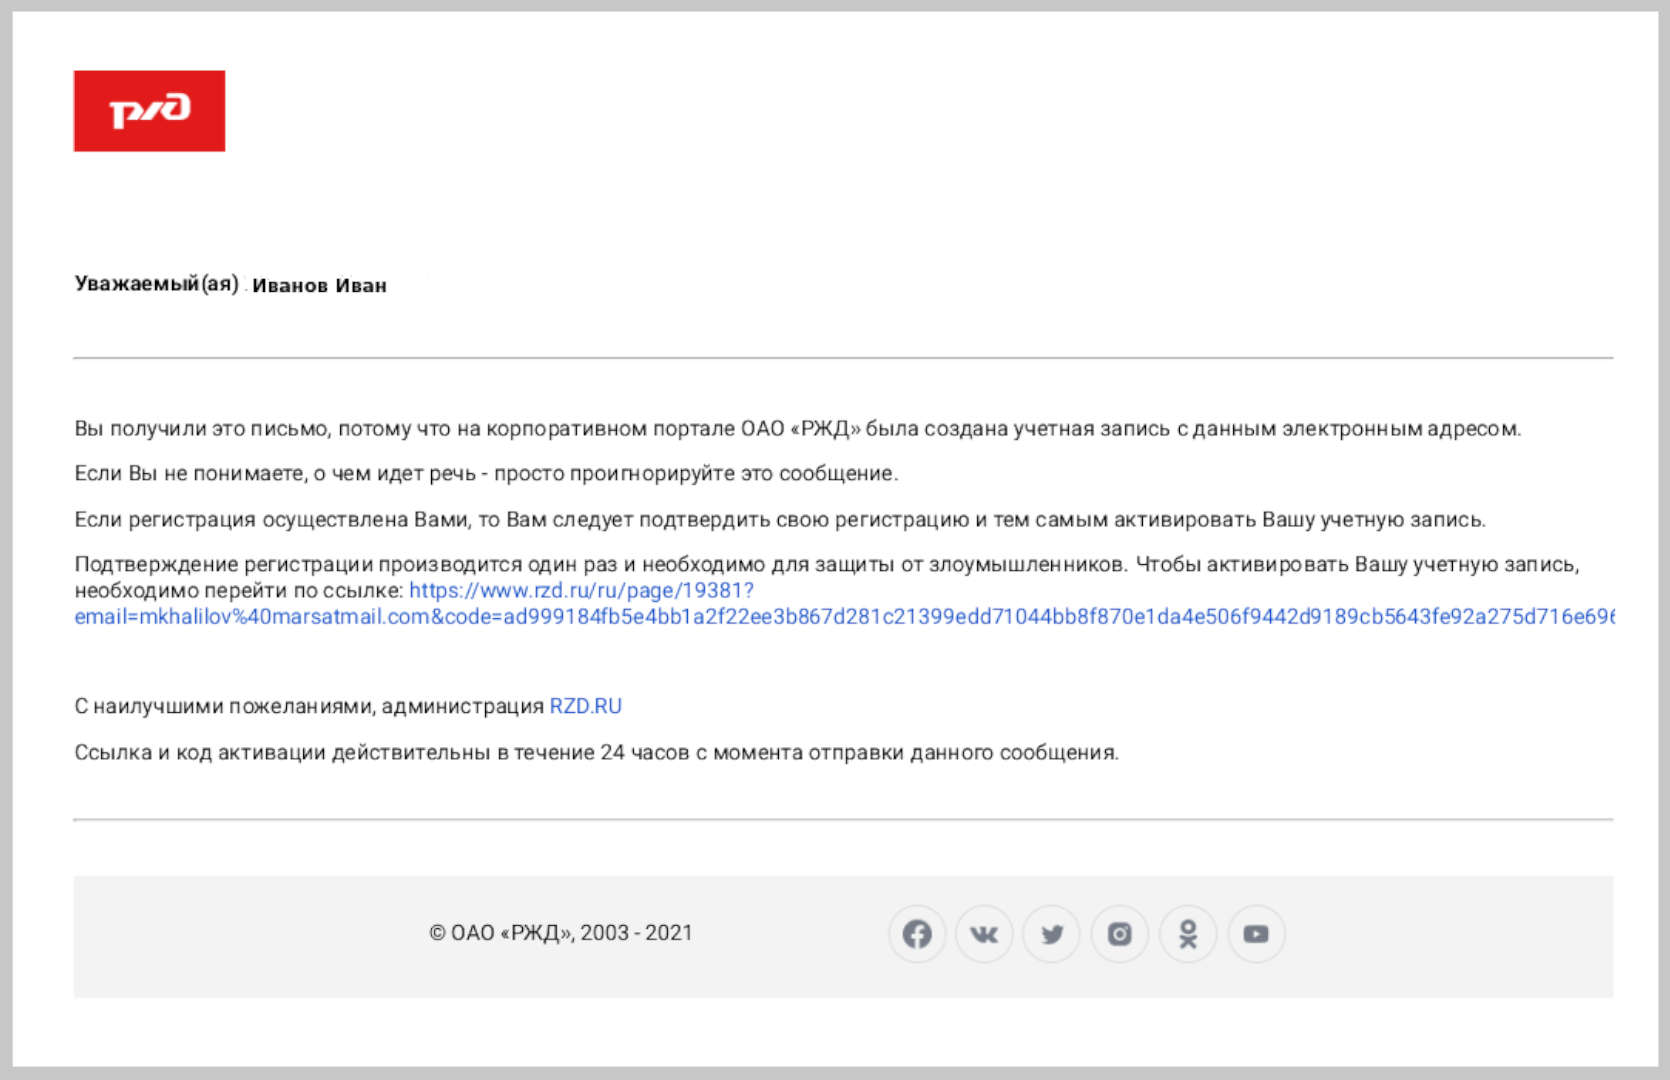 Скриншот письма от ОАО «РЖД» со ссылкой для активации профиля.